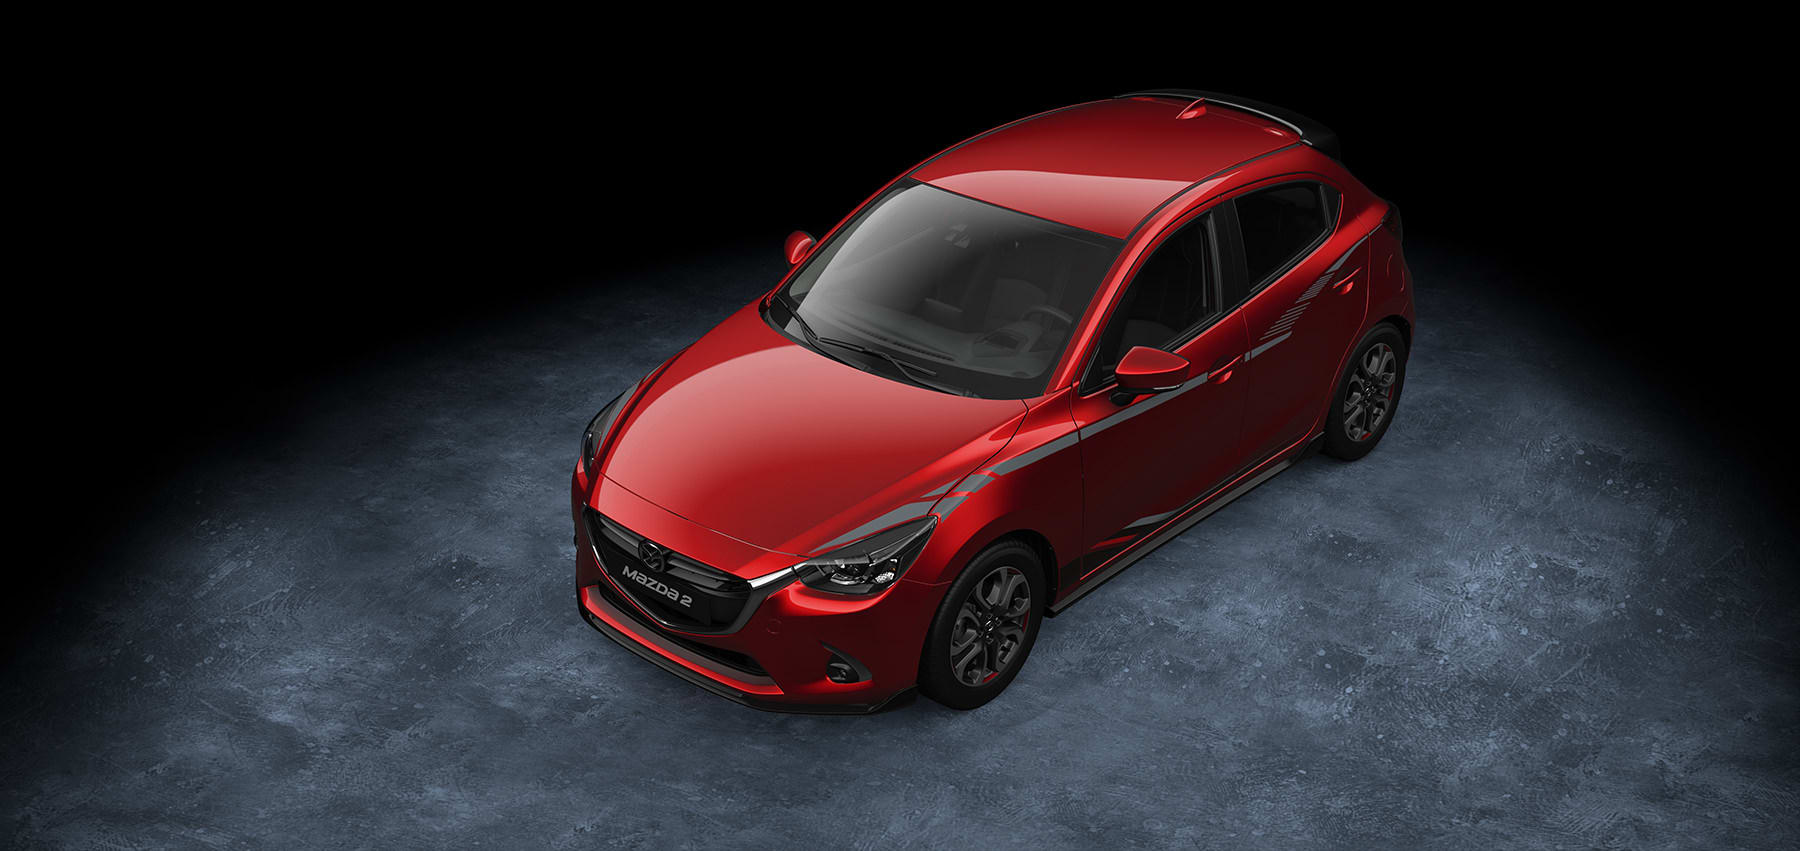 Zubehör-Highlights für den Mazda2